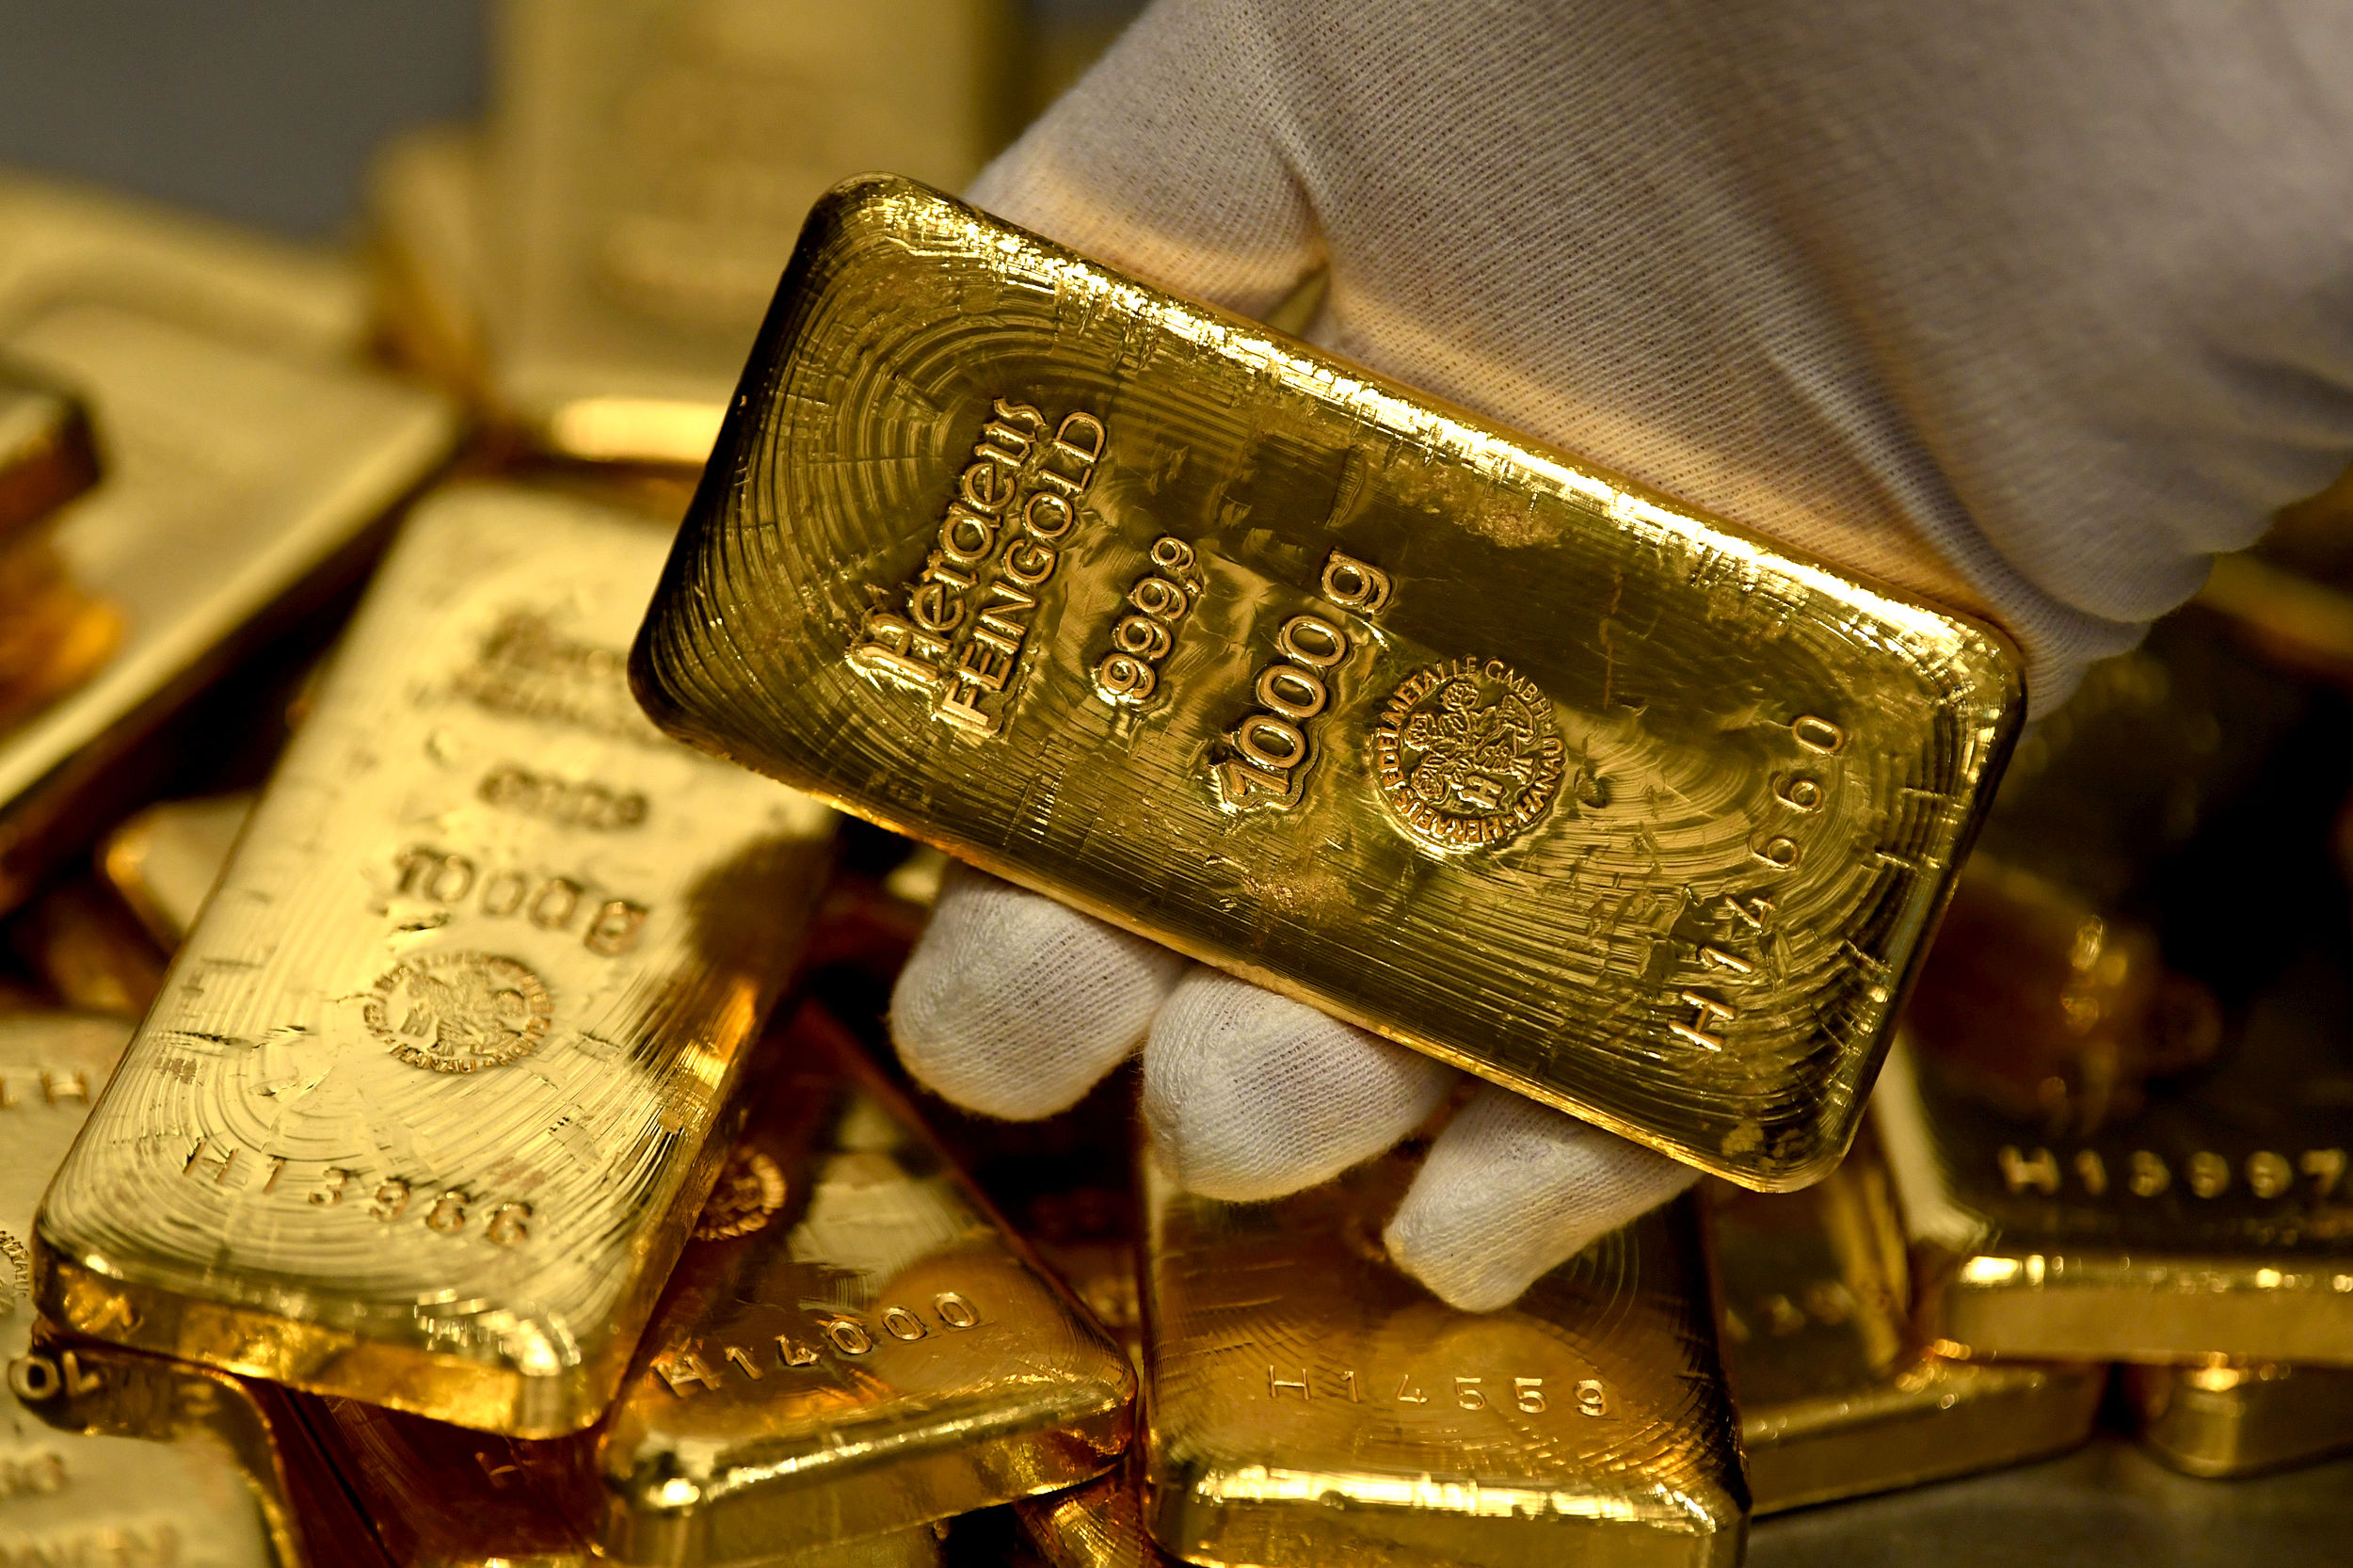 کاهش تدریجی امید طلای جهانی به تورم!